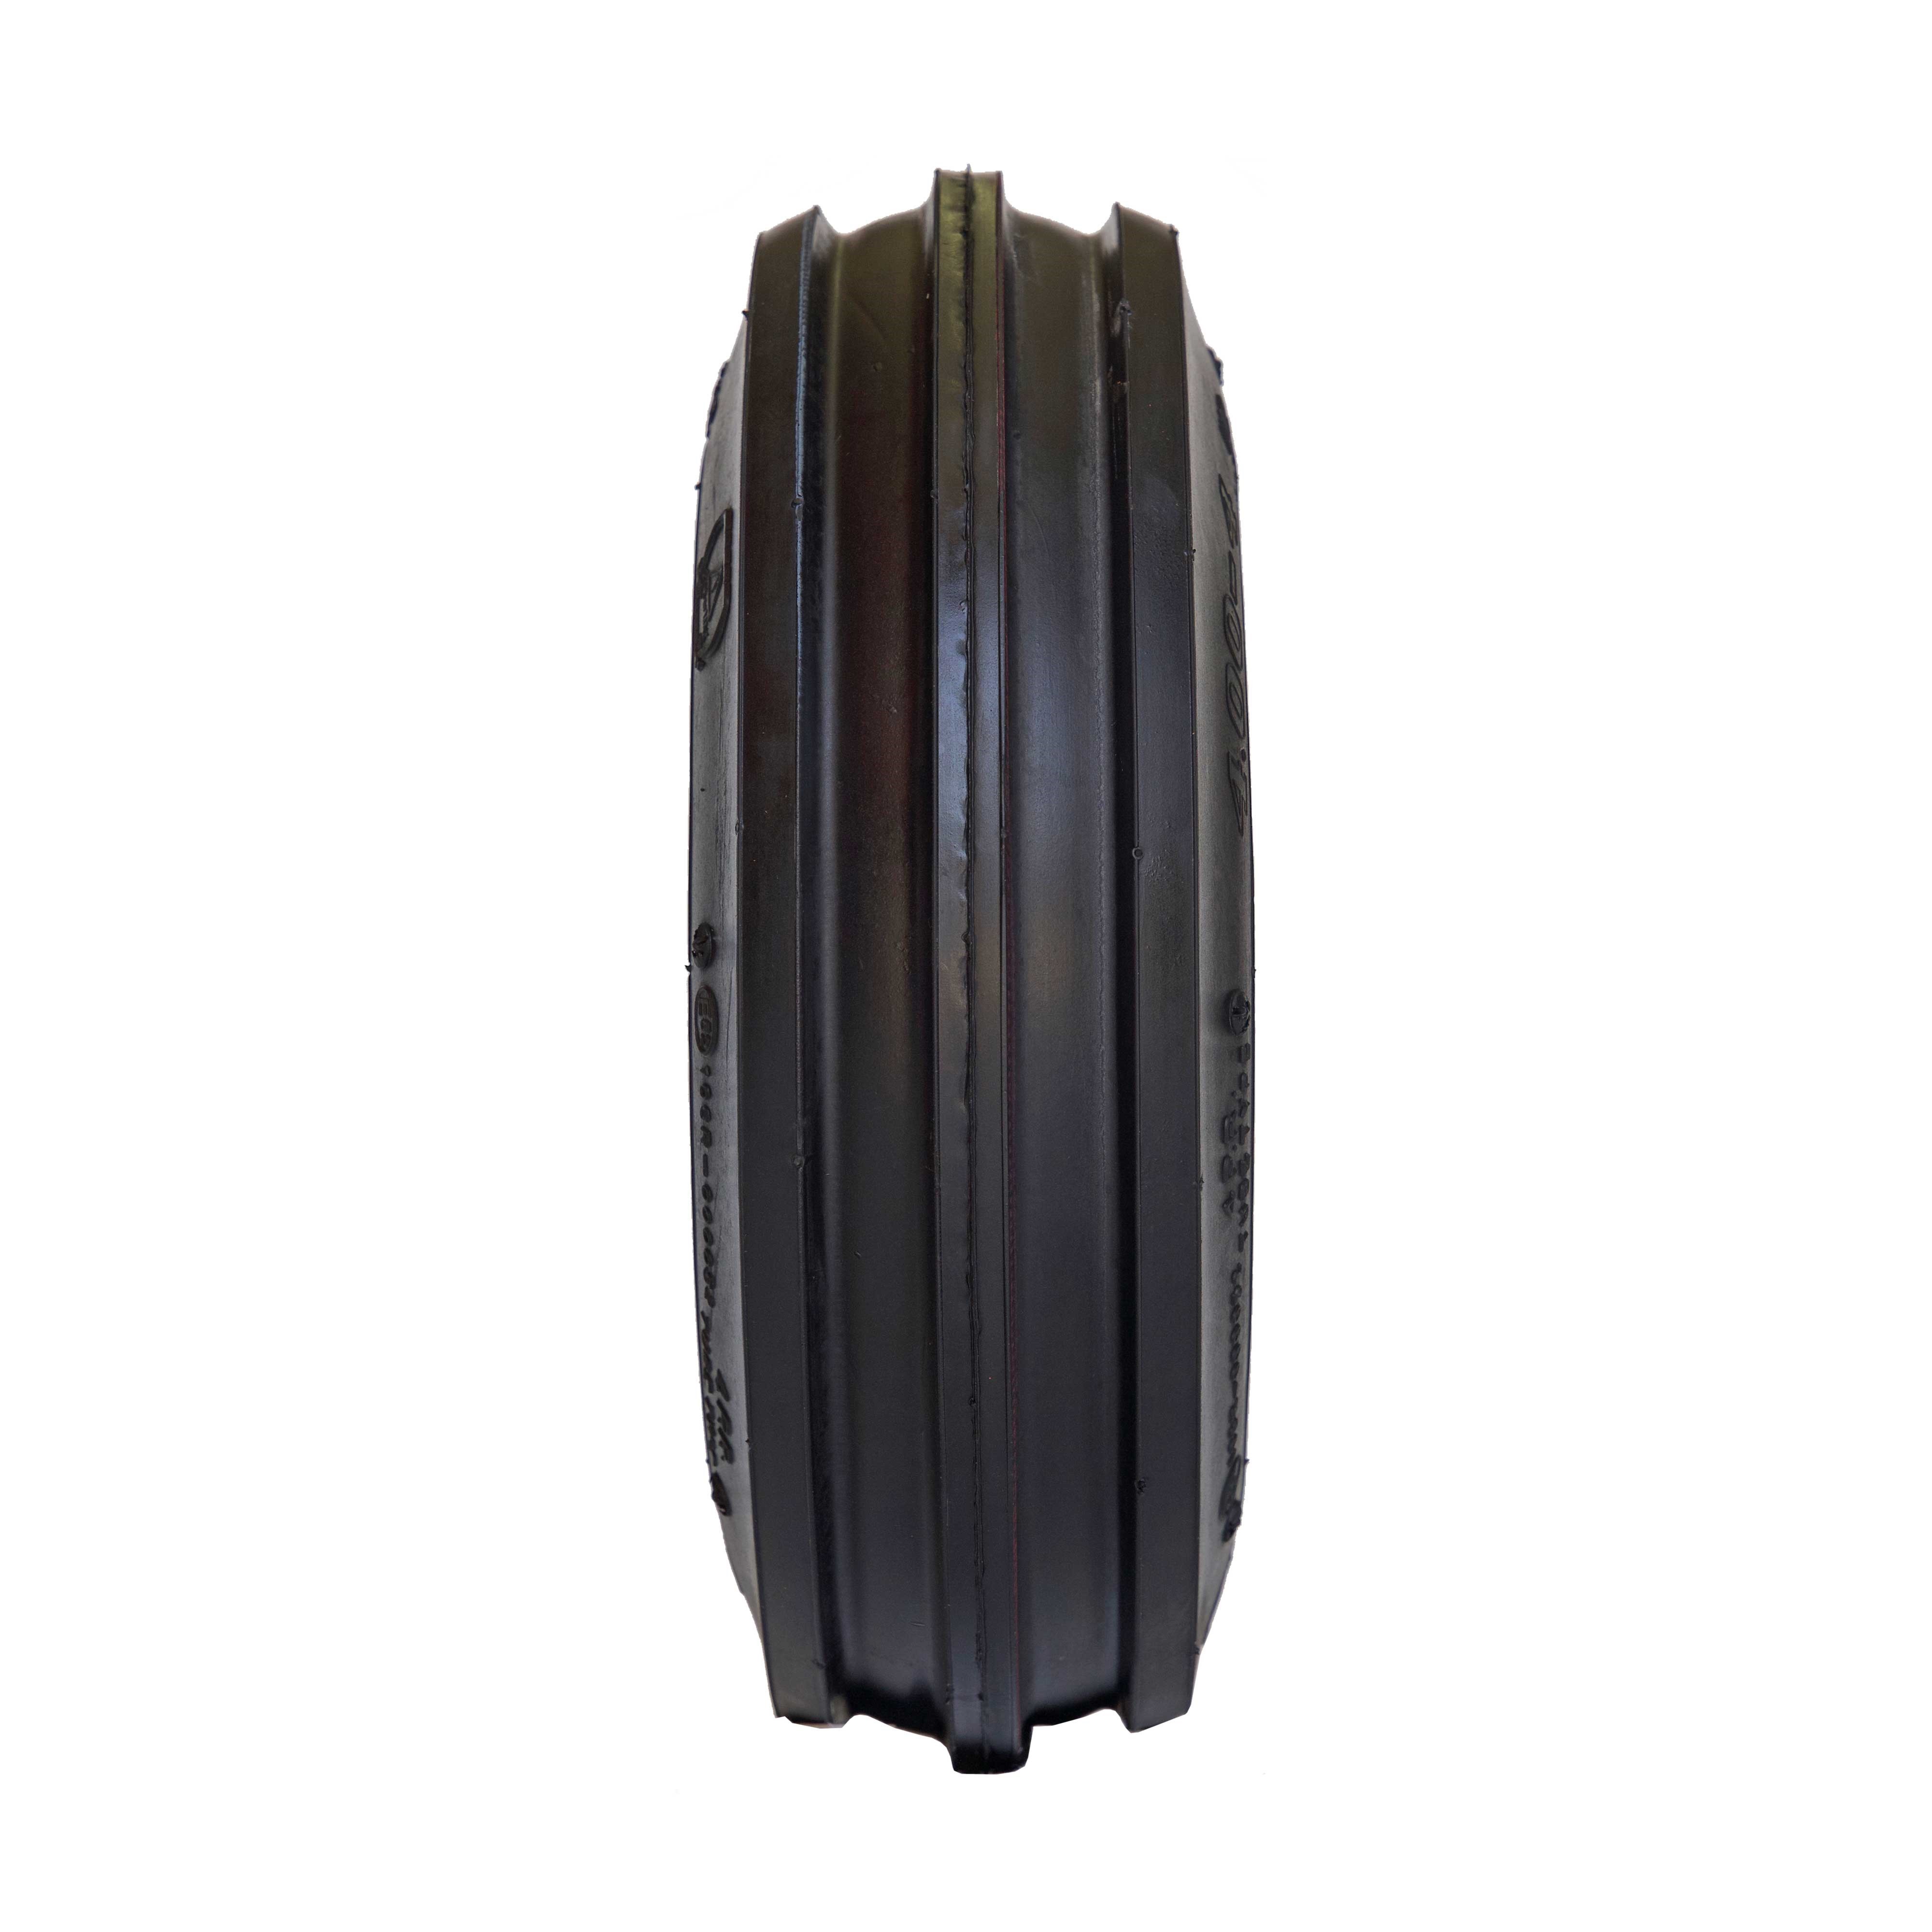 Reifen für Kreissler 3.00-4, 4PR, Deli S-318